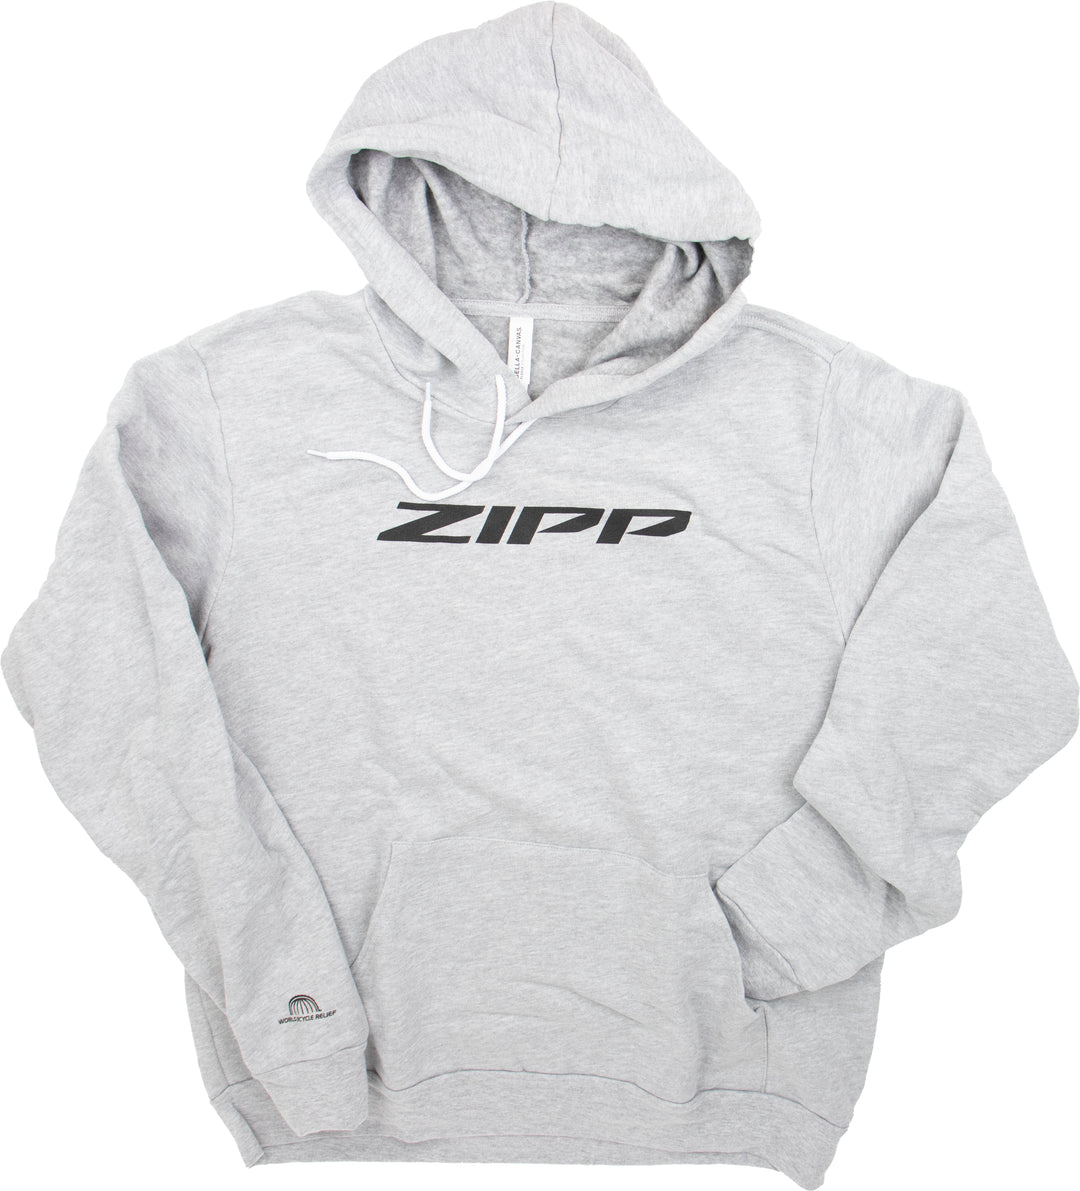 Zipp New Logo Hooded Sweatshirt